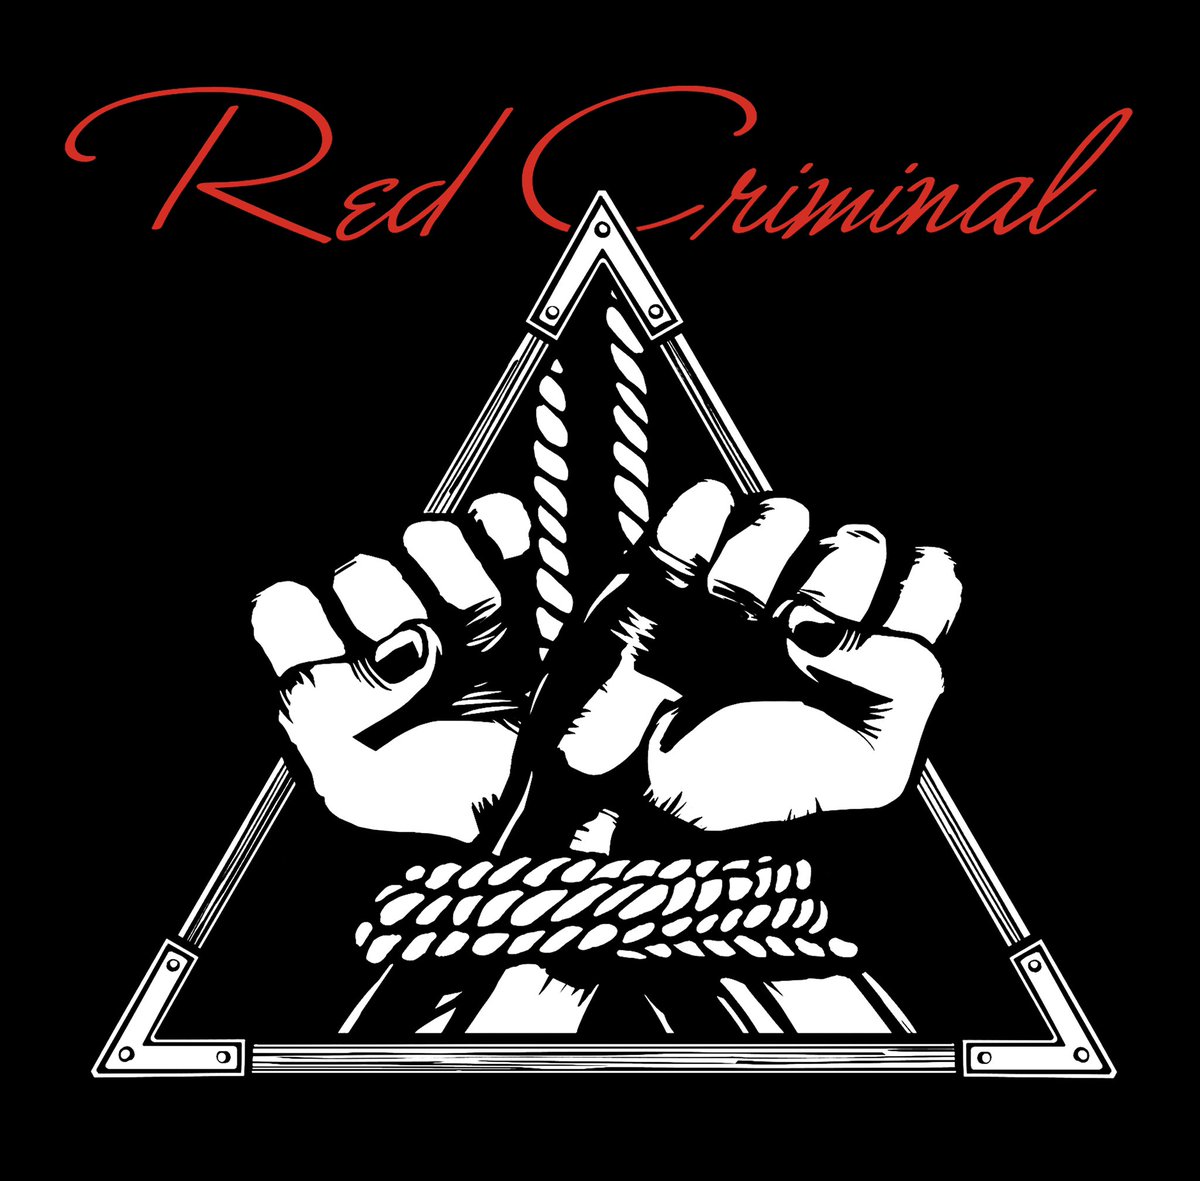 『THE ORAL CIGARETTES - Red Criminal』収録の『Red Criminal』ジャケット